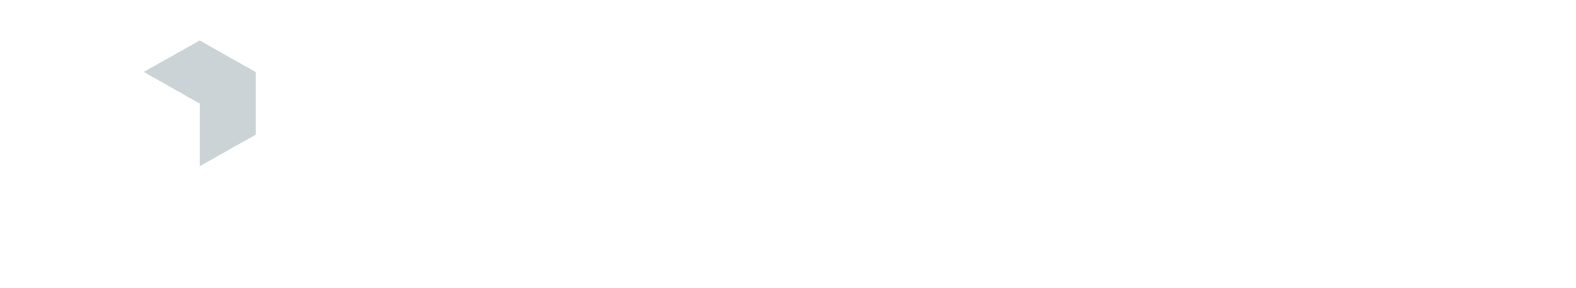 Cornerstone Building Brands logo grand pour les fonds sombres (PNG transparent)